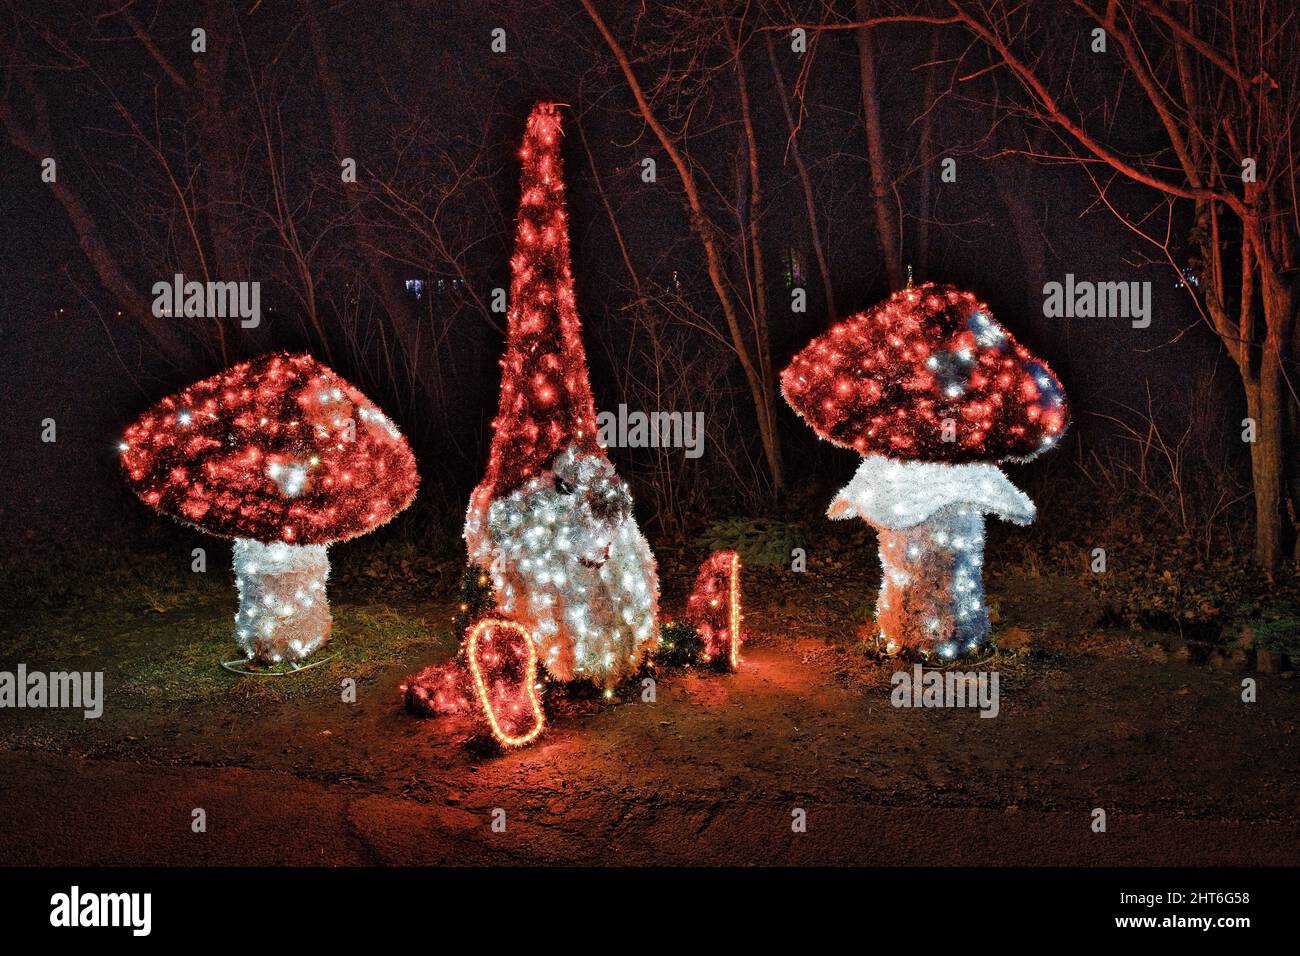 Splendide figure magiche di funghi notturni con molte luci a LED che illuminano il giardino all'aperto Foto Stock